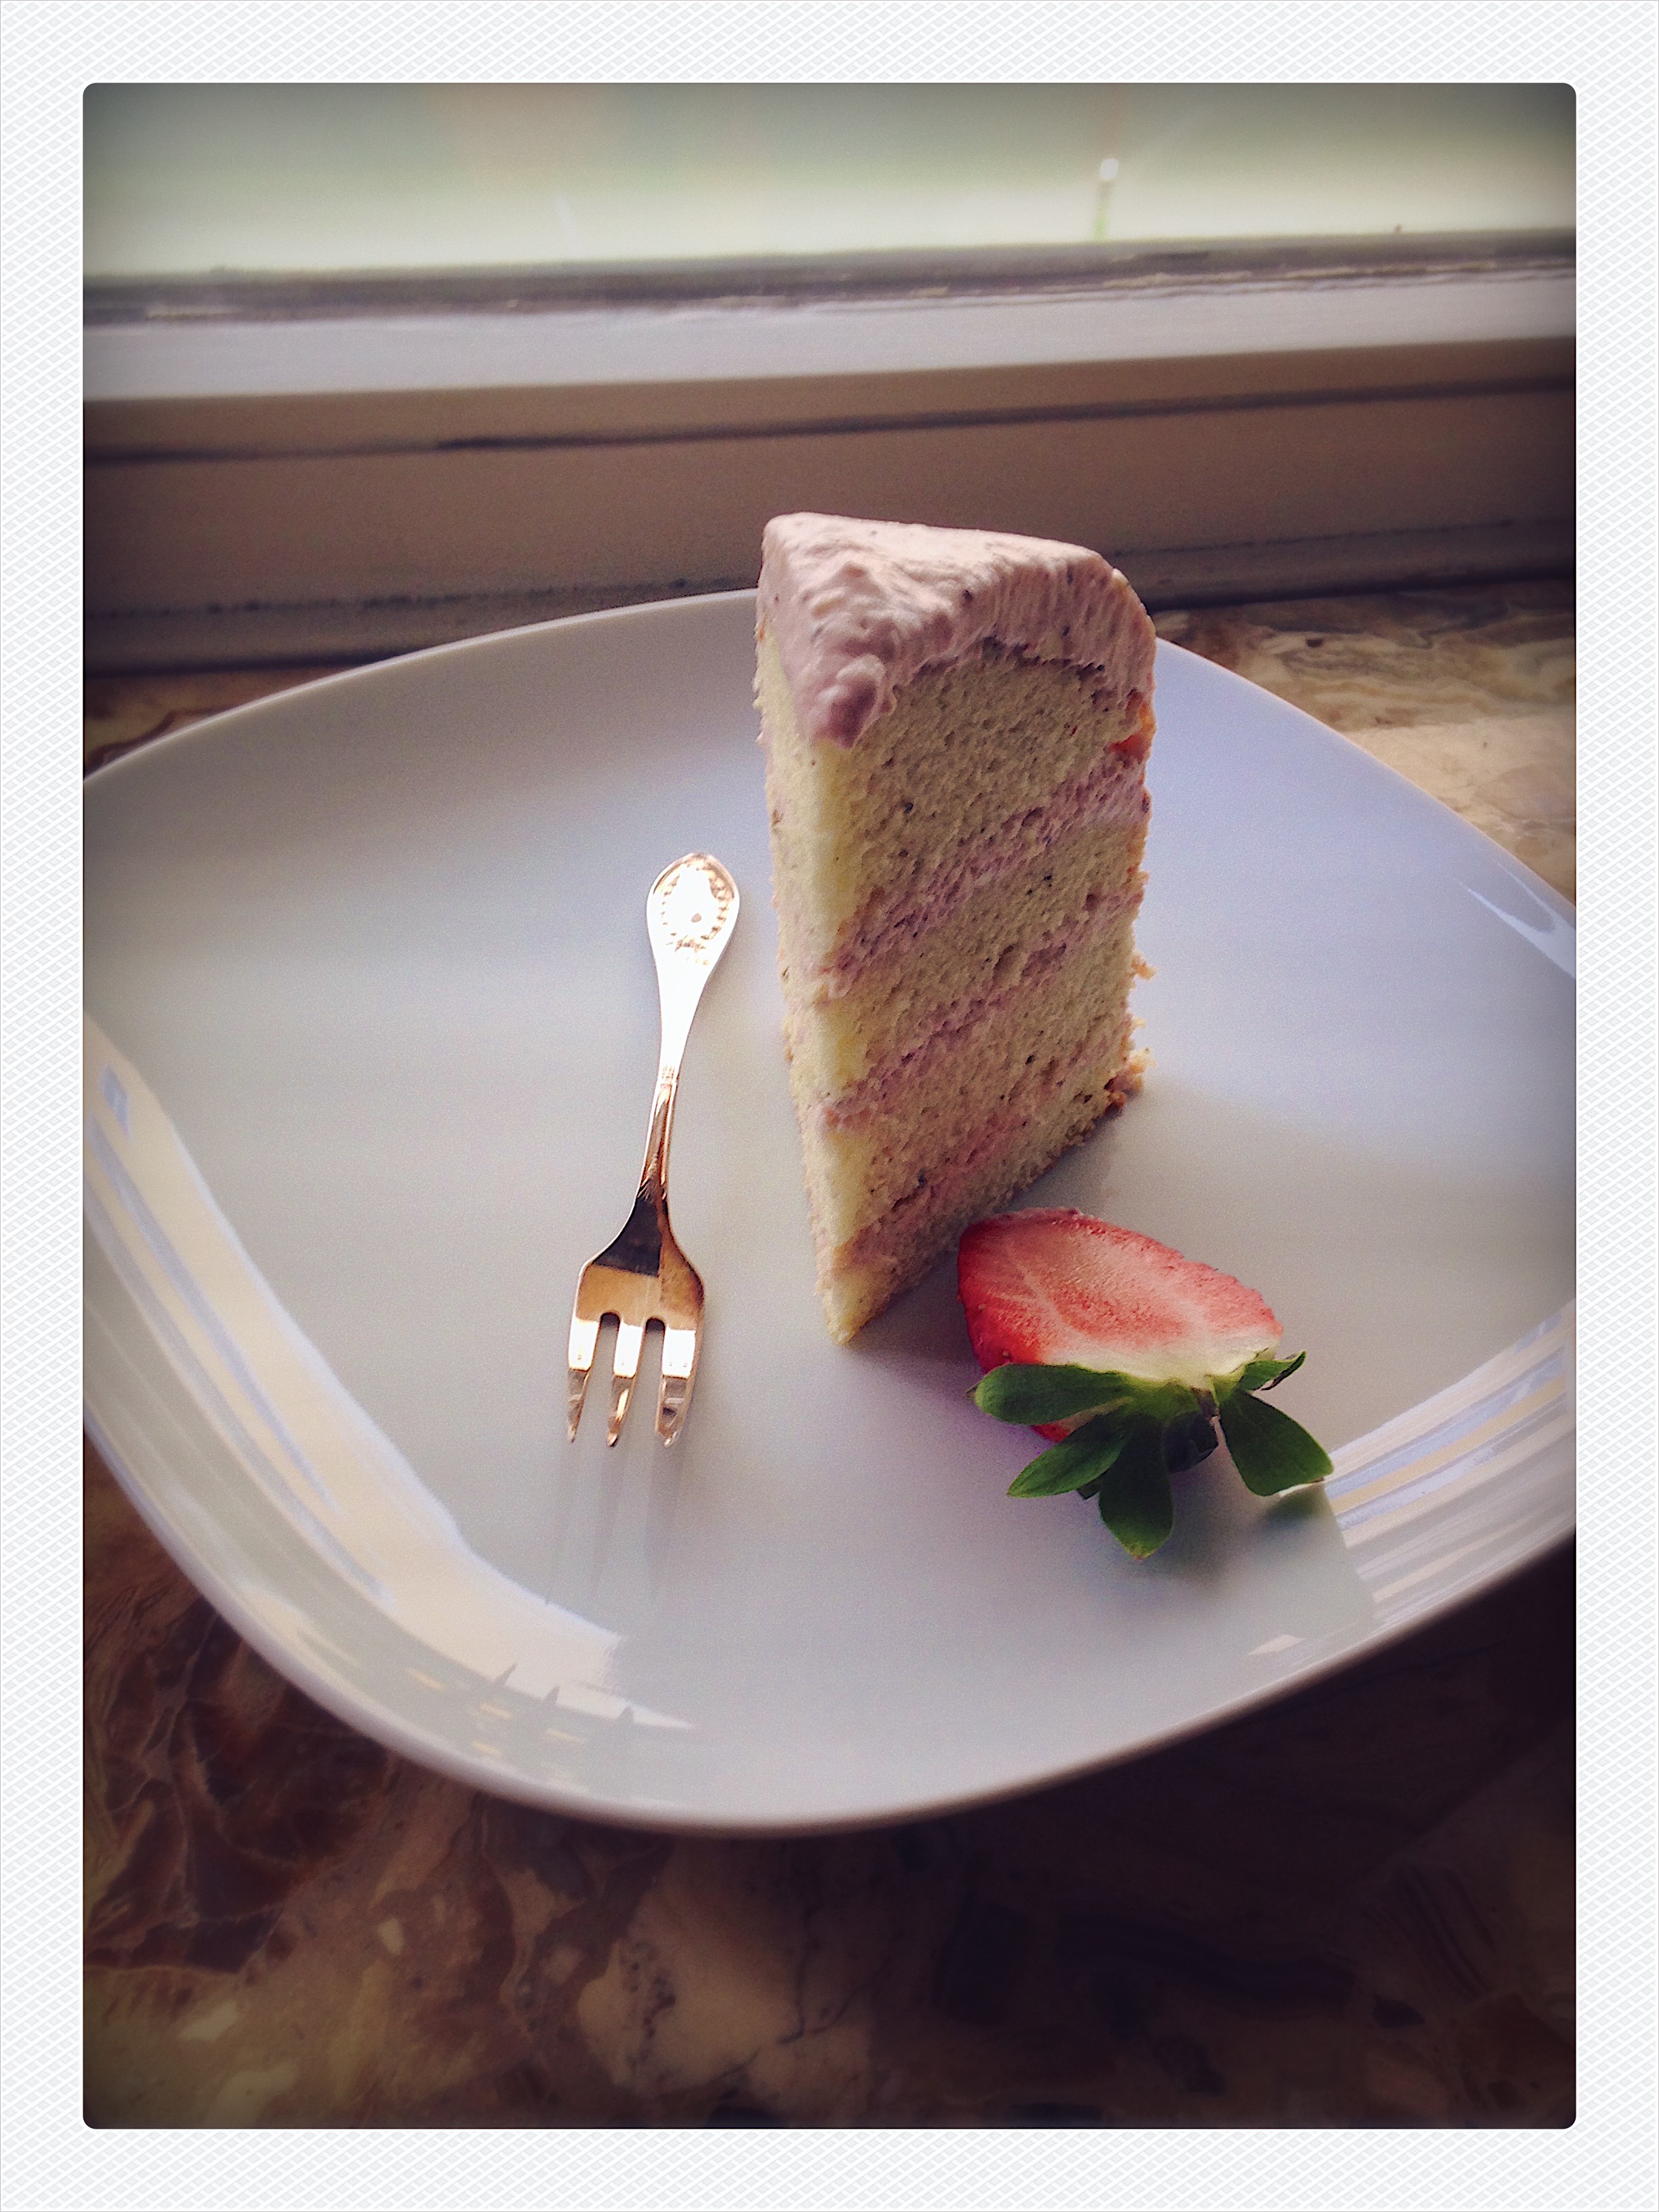 Vanille Torte mit Erdbee-Frosting | Julie Fahrenheit